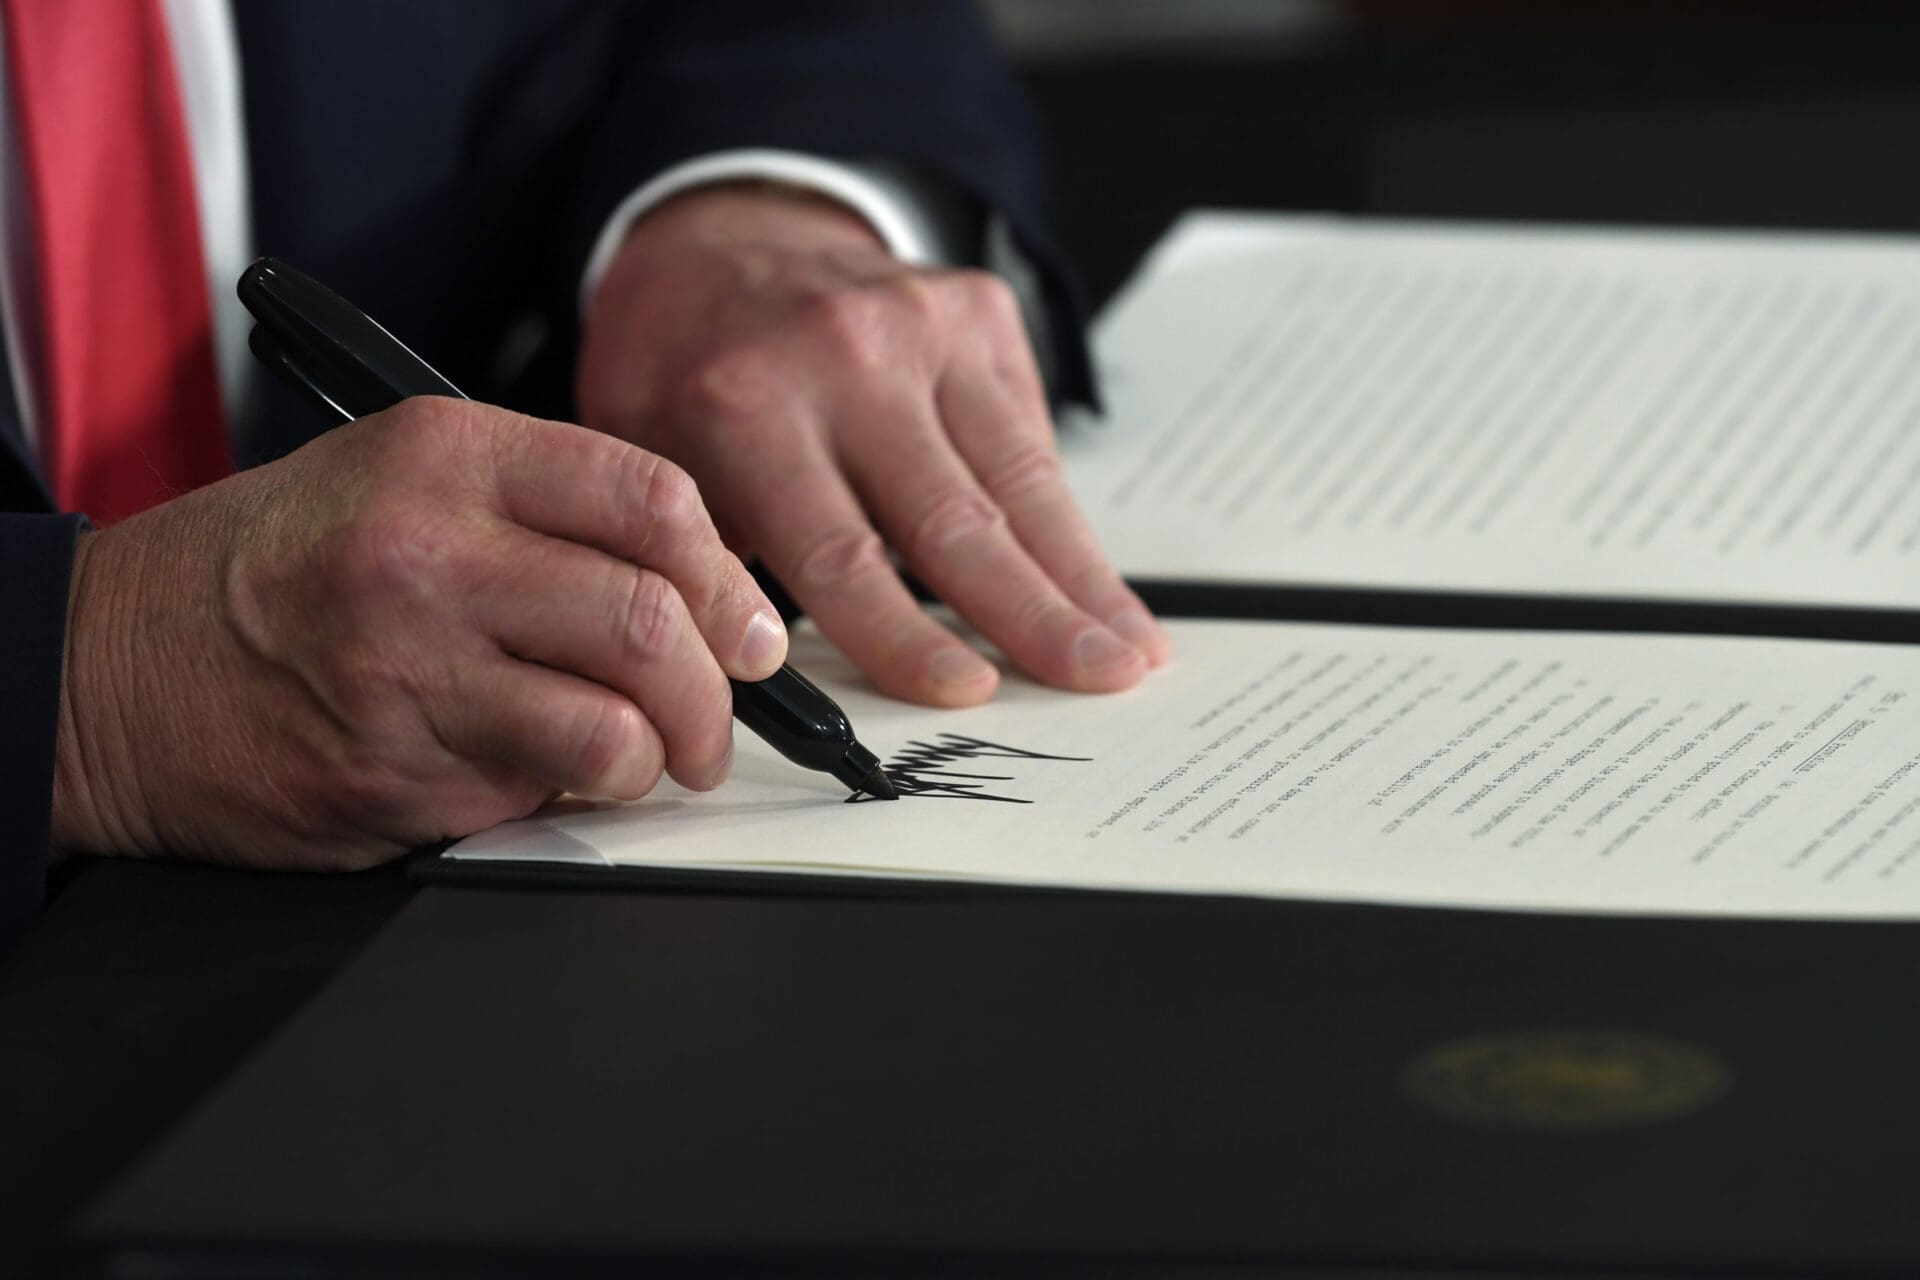 Donald Trump executive order signing